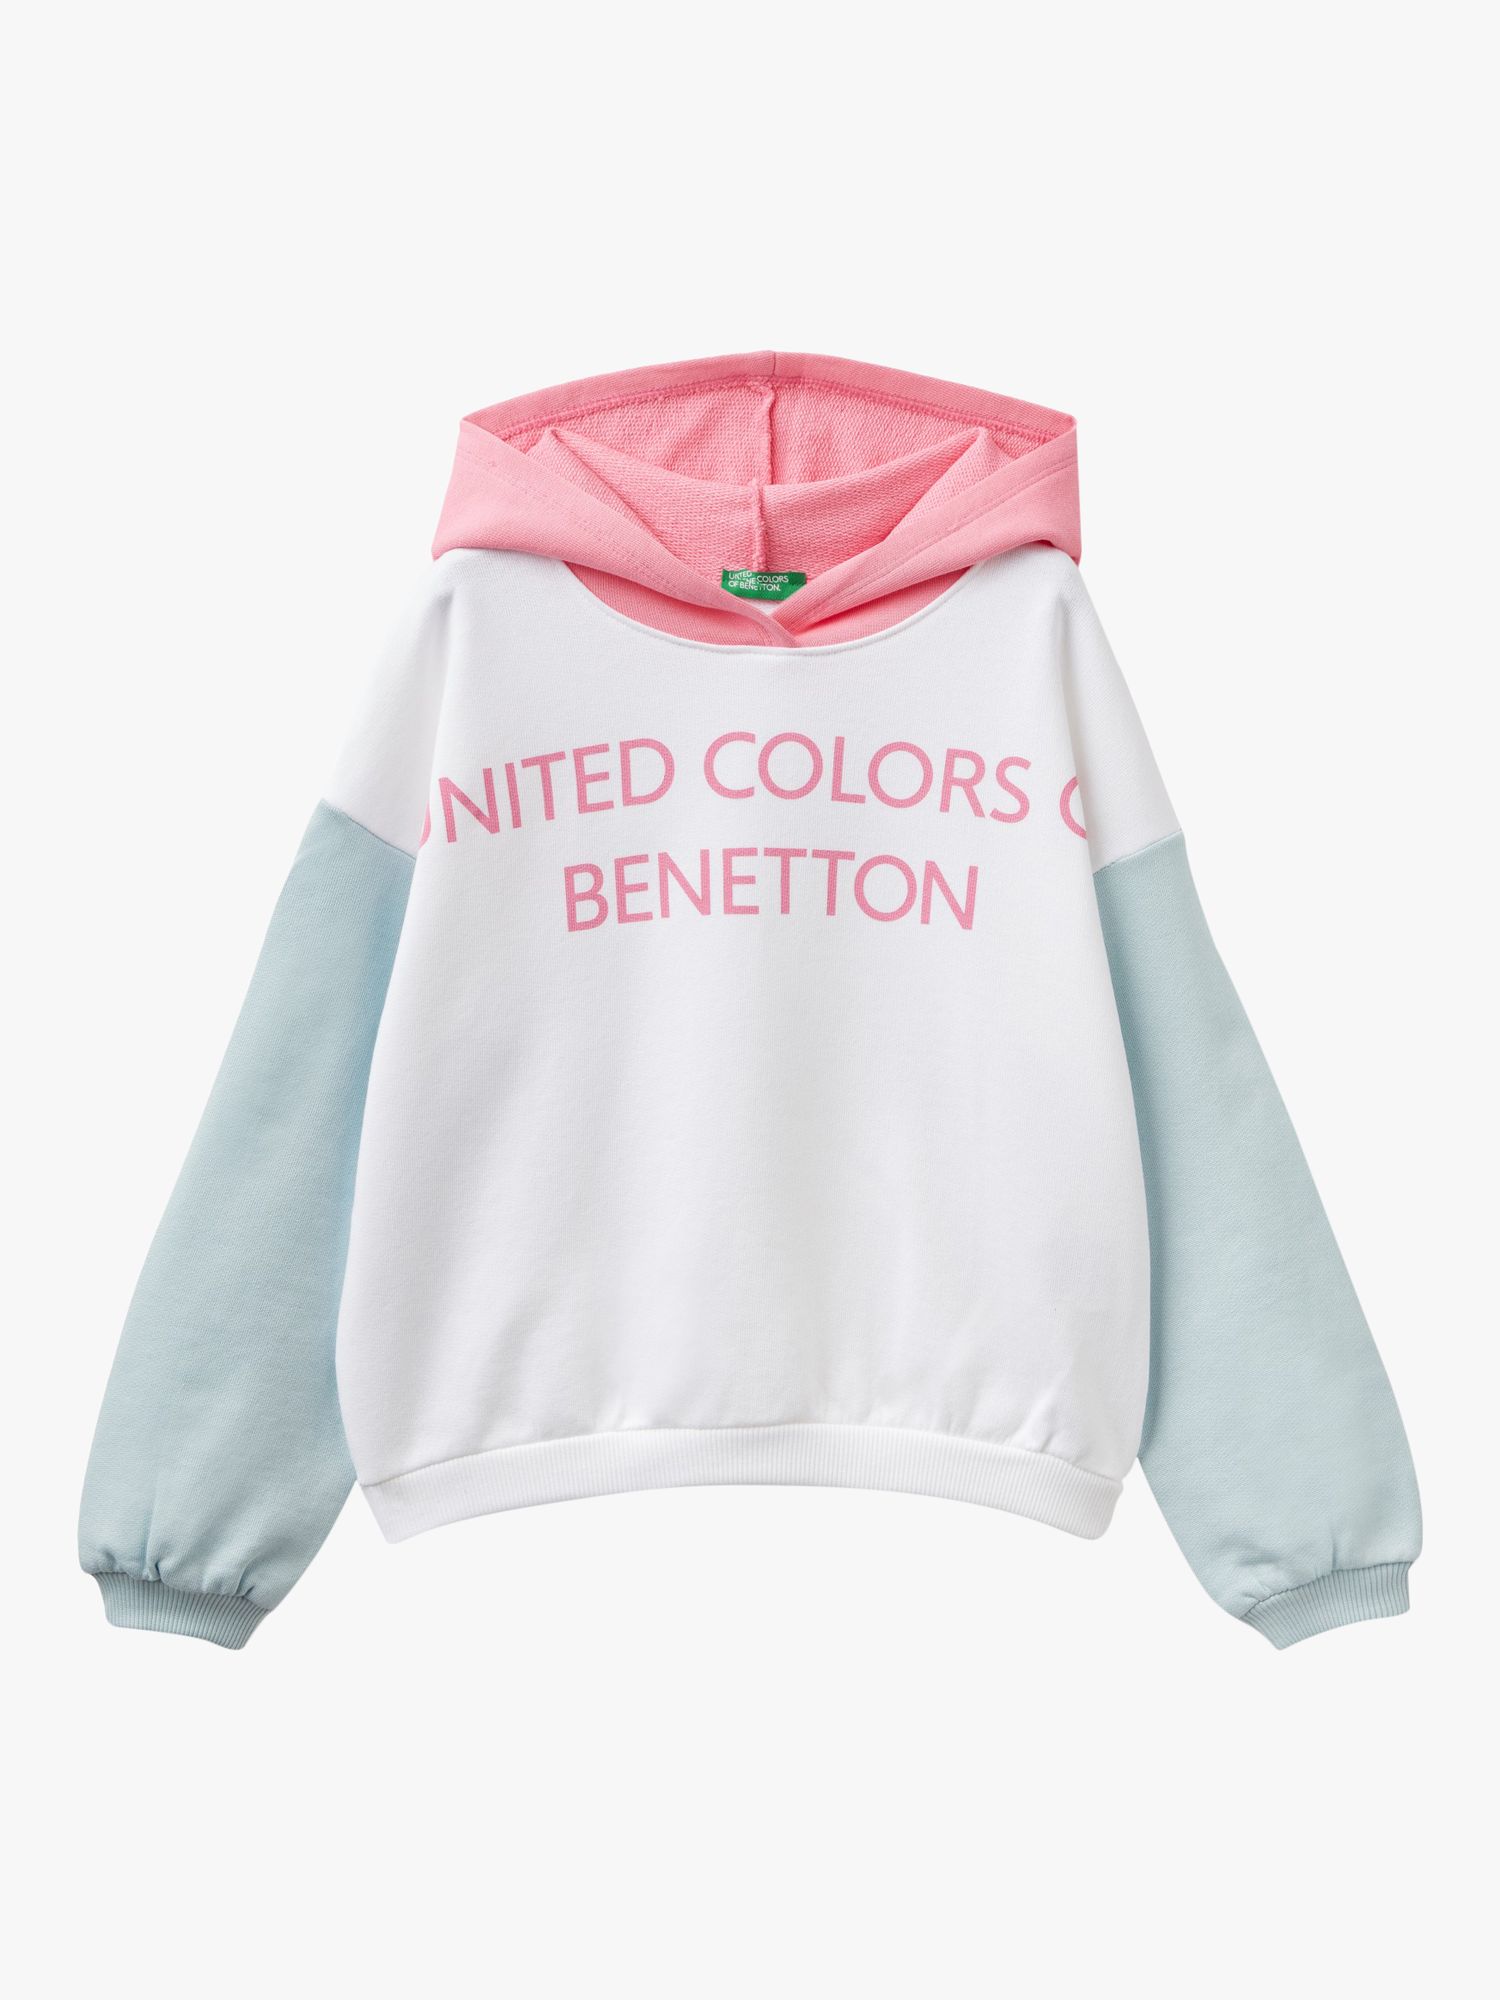 Benetton Kids' Logo Hooded Sweatshirt, Multi, 6-7 years